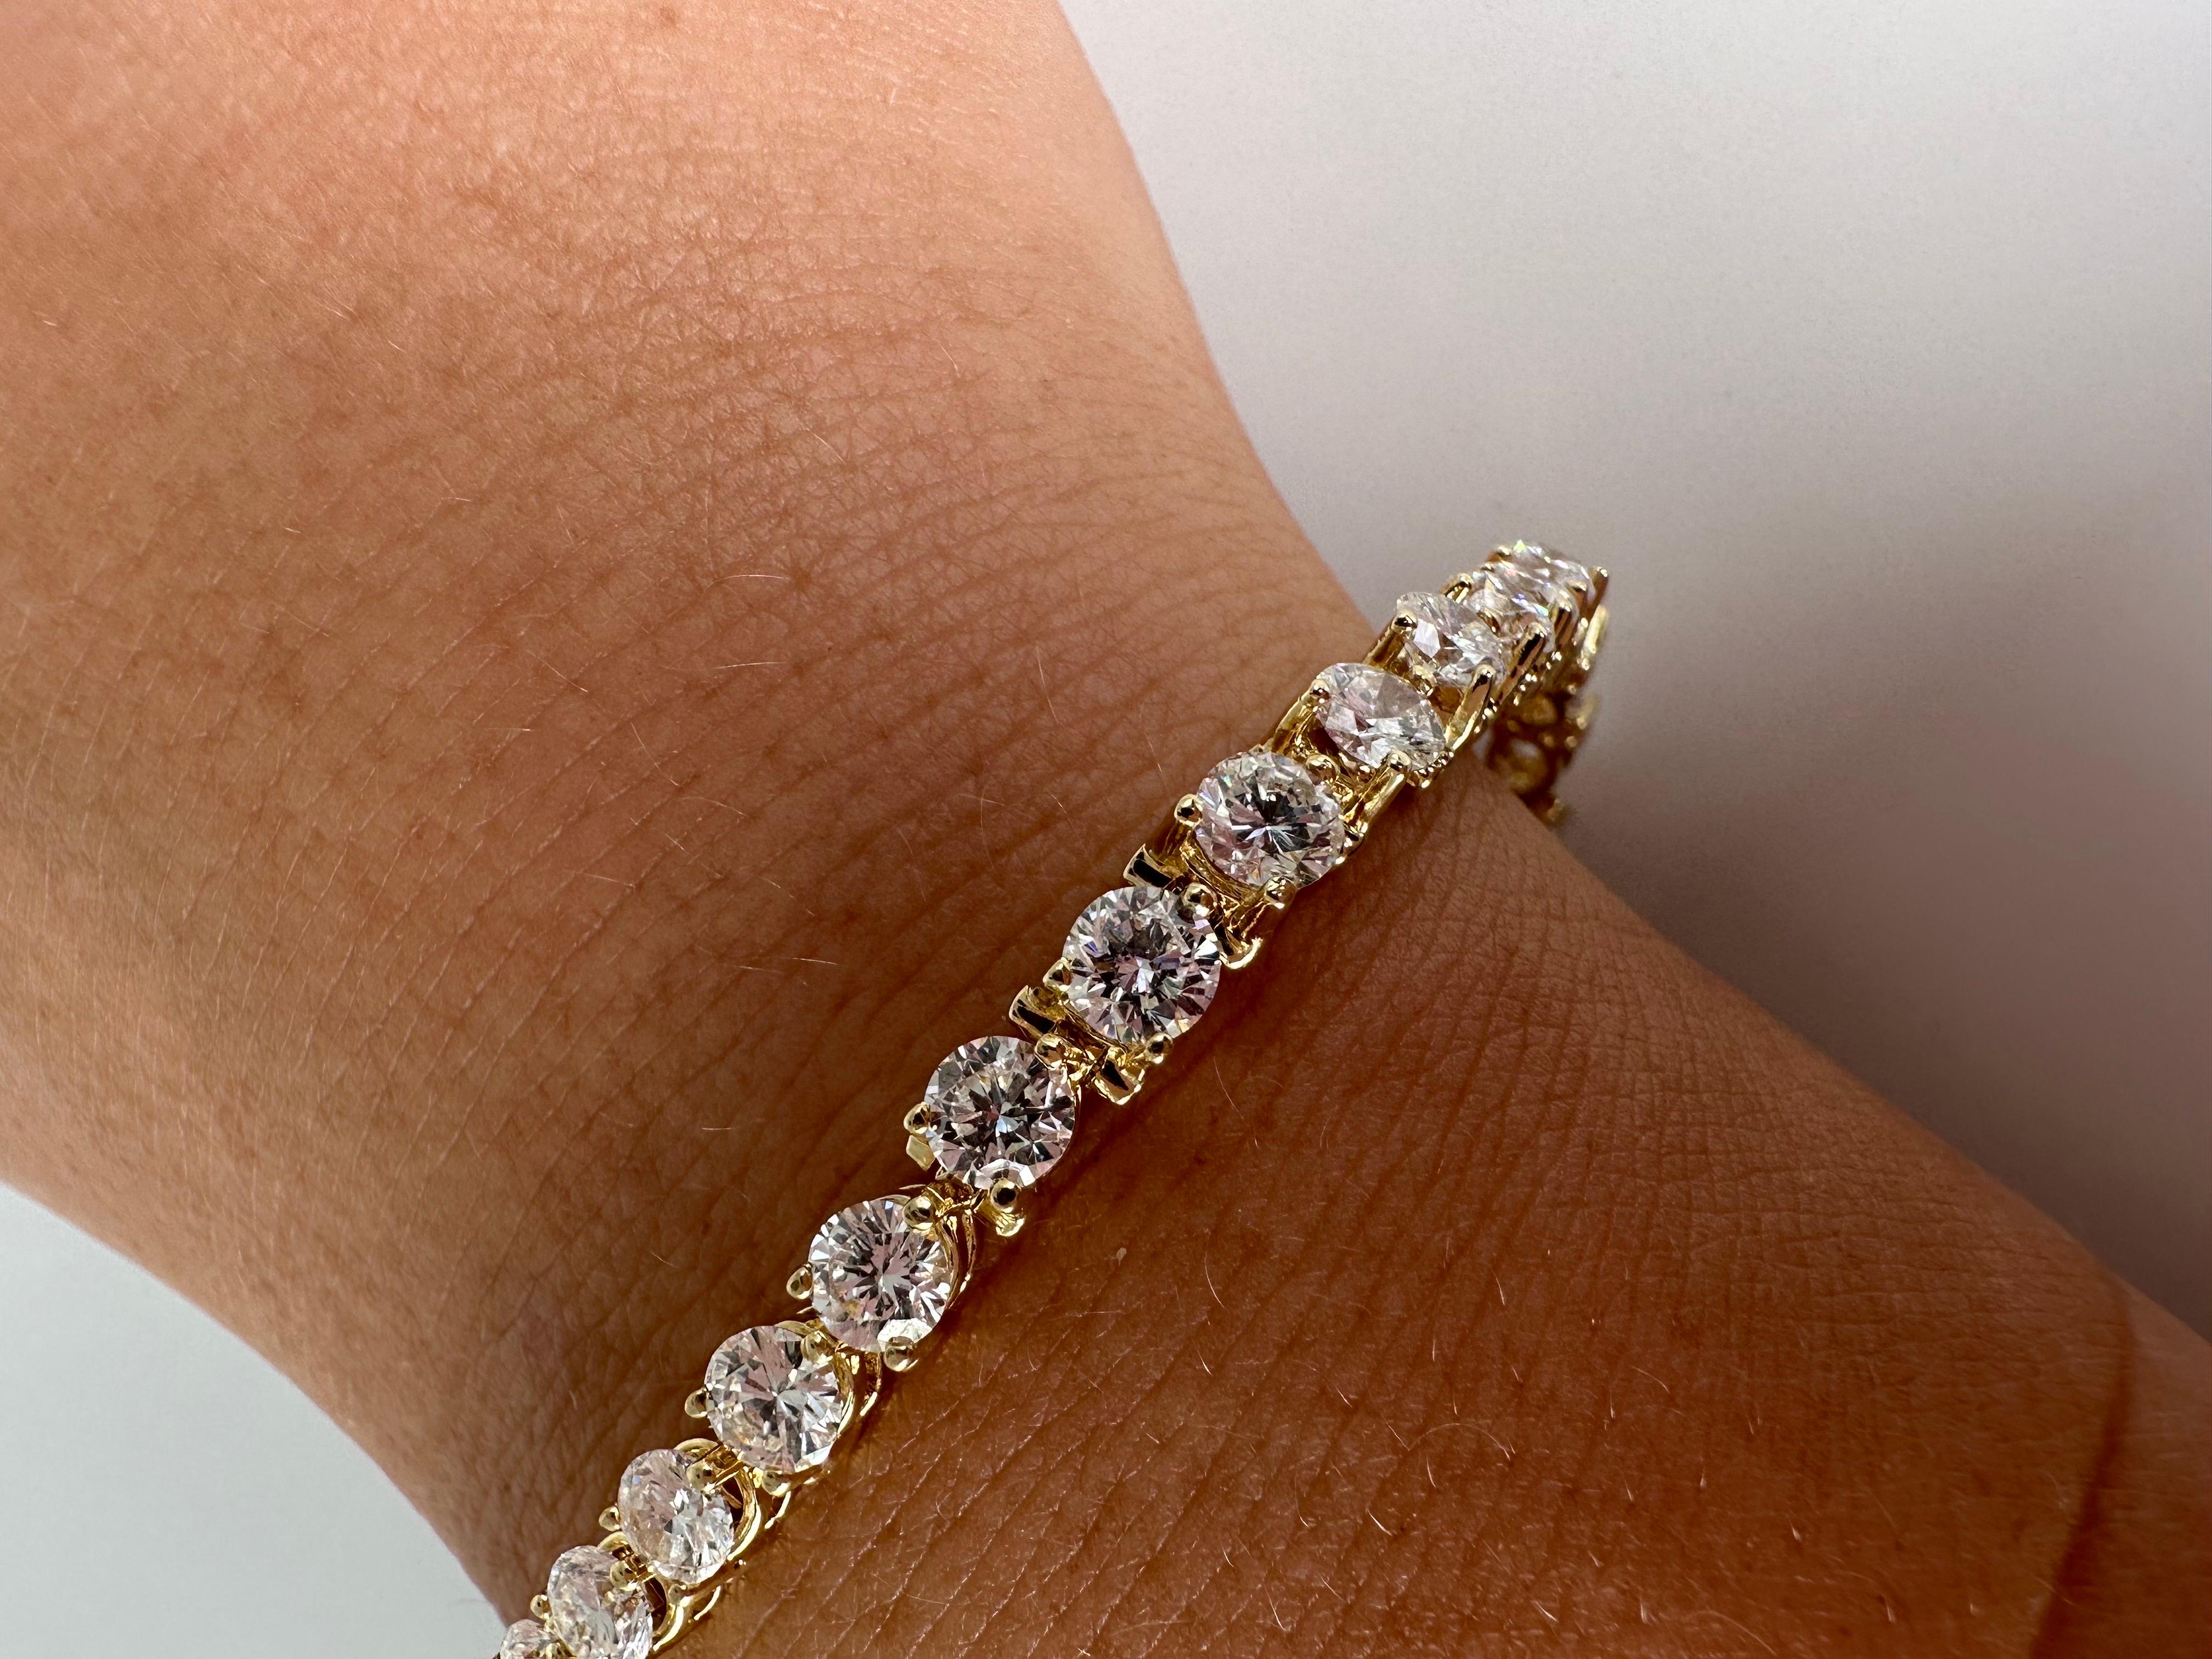 Remarquable bracelet de diamants en or jaune 14KT, les maillons soigneusement réalisés en trio sont polis à la perfection et ajoutés les uns aux autres, c'est un luxueux bracelet de tennis qui sera fabuleux avec n'importe quelle tenue !

OR : or